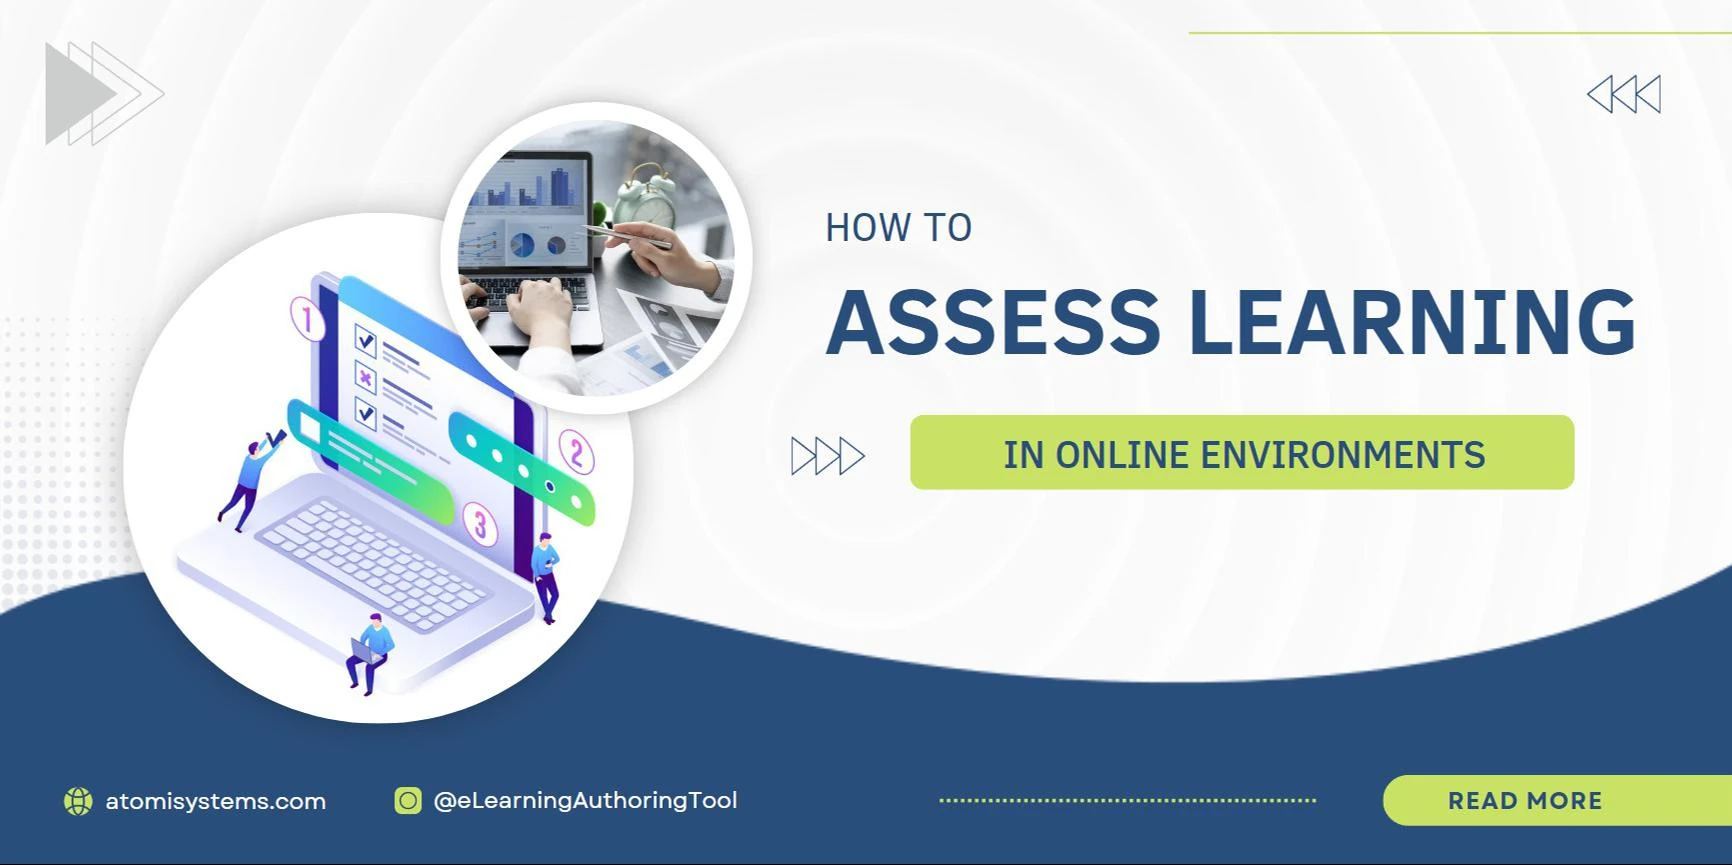 online assessment